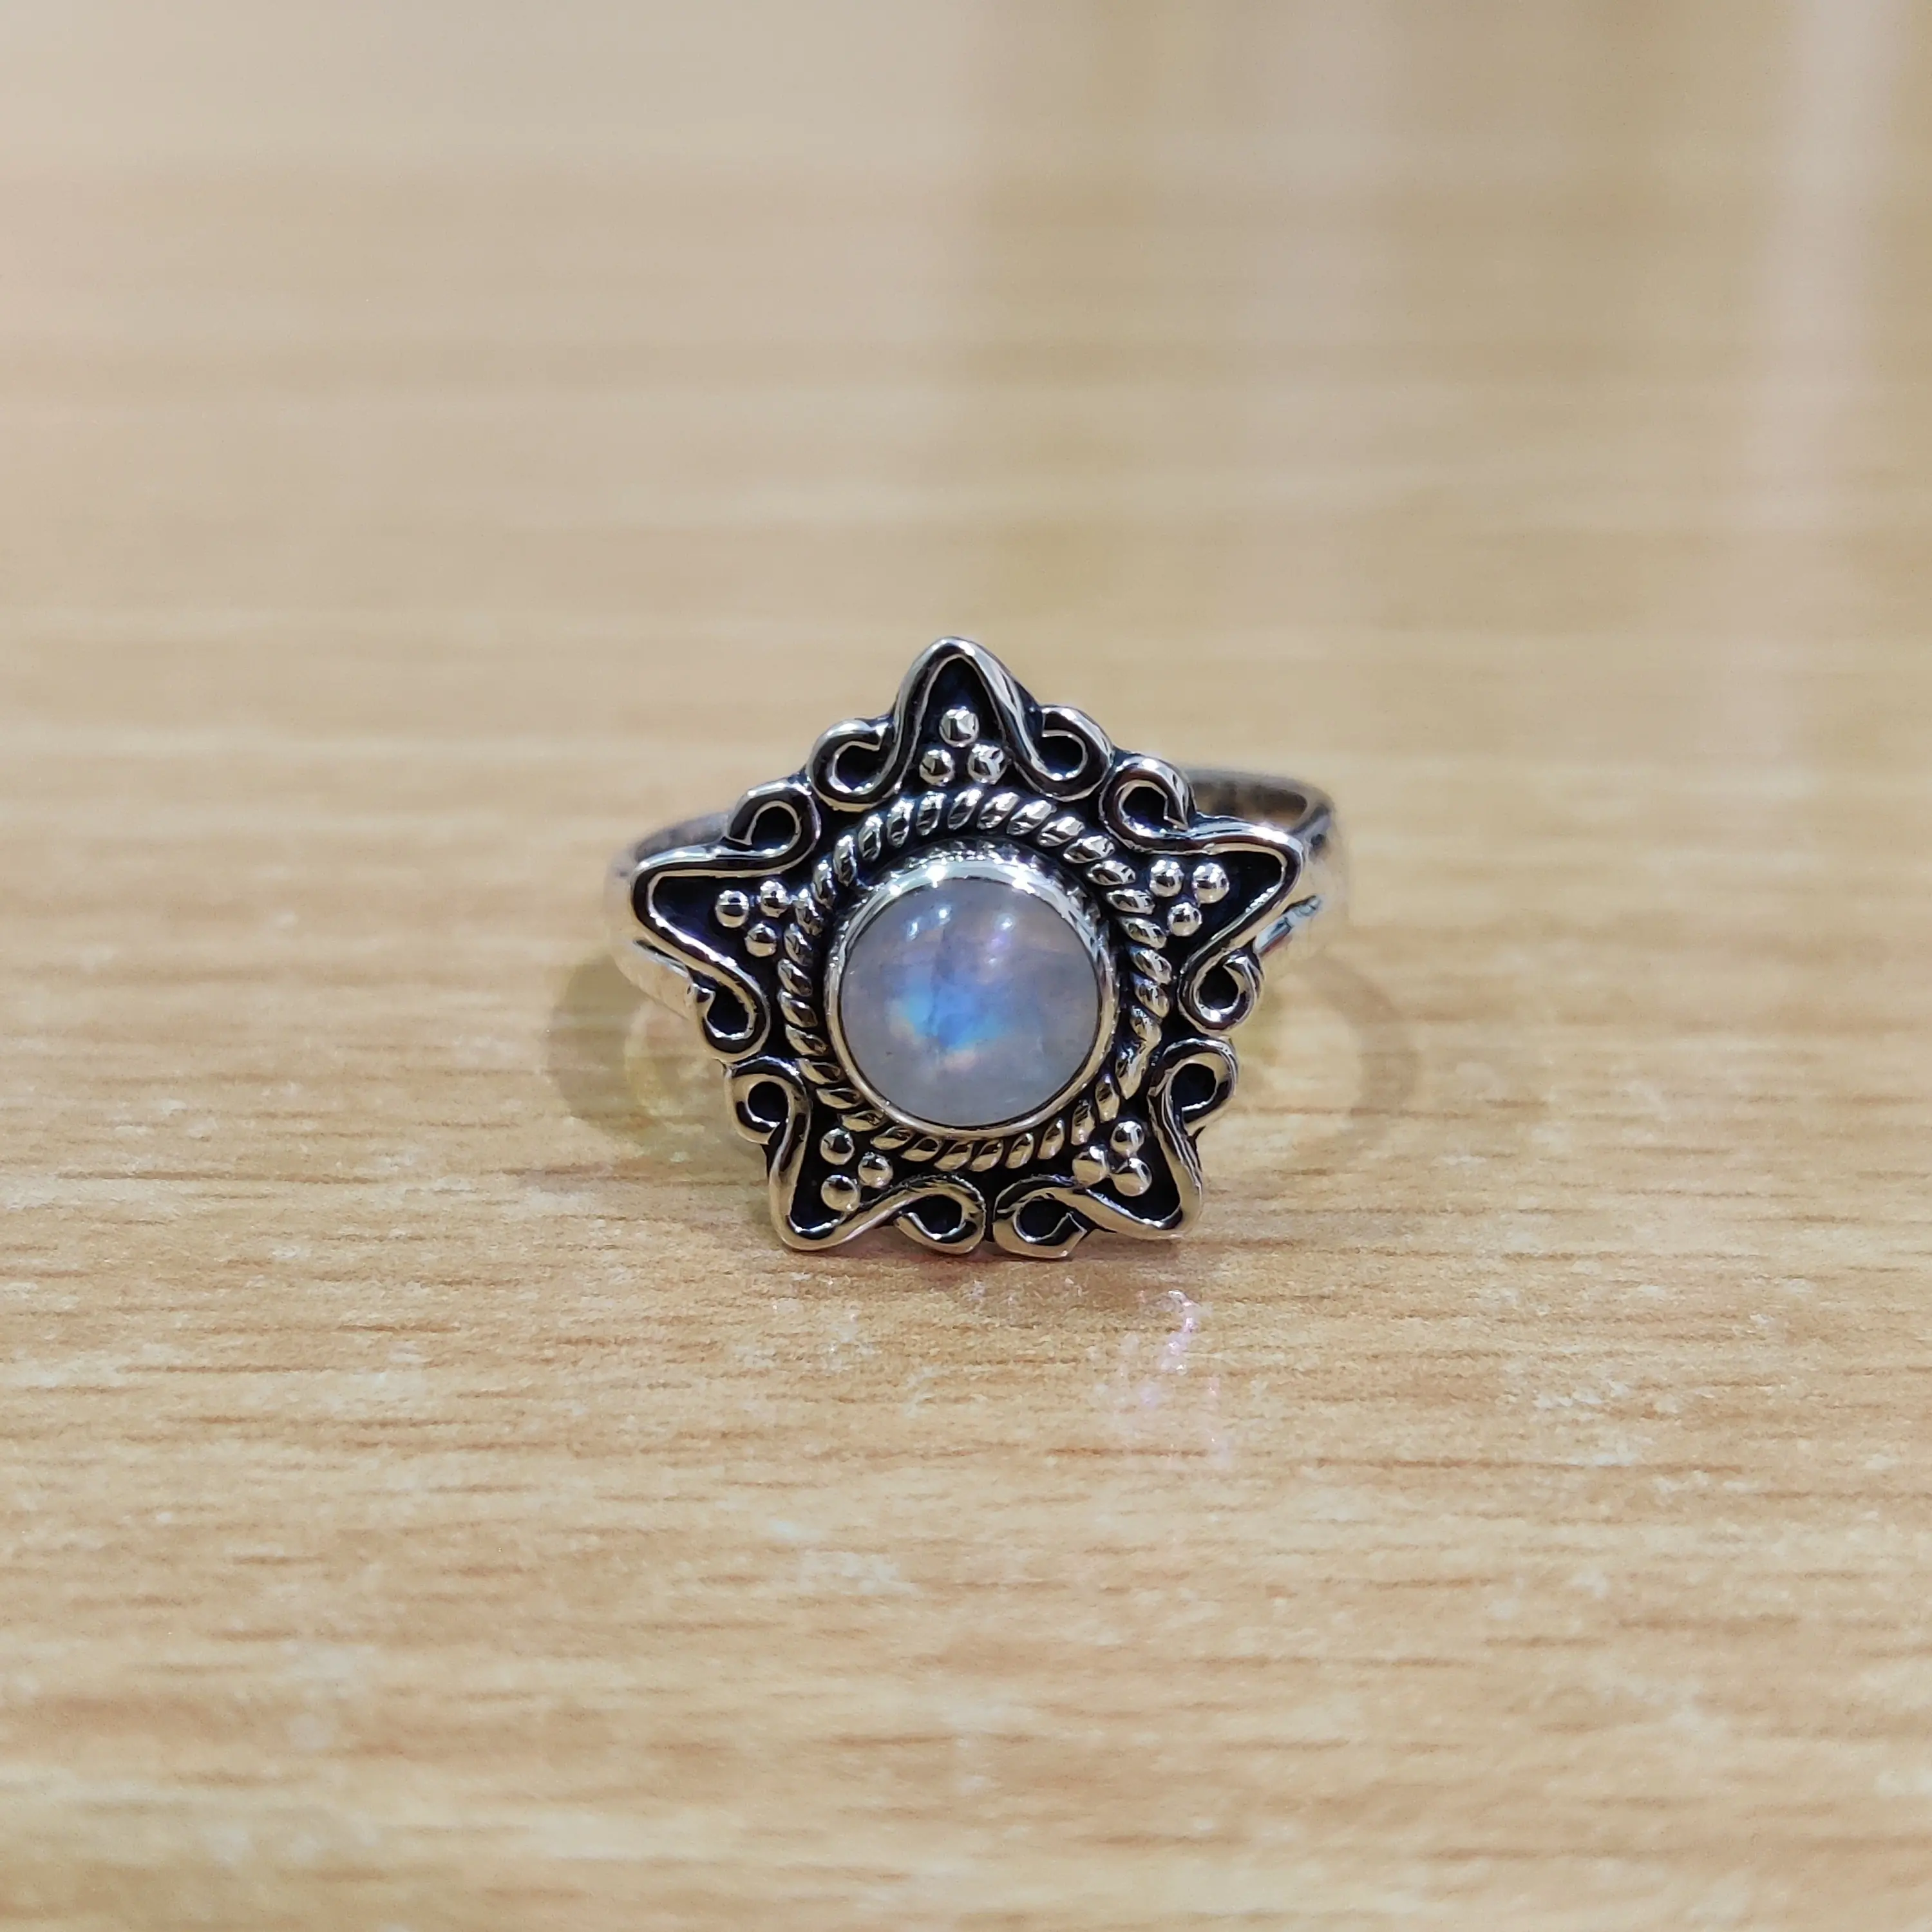 Sternform Mondstein Silberring blaues Feuer Mondstein Ring greife jetzt dieses Angebot als bestes Geschenk für sie